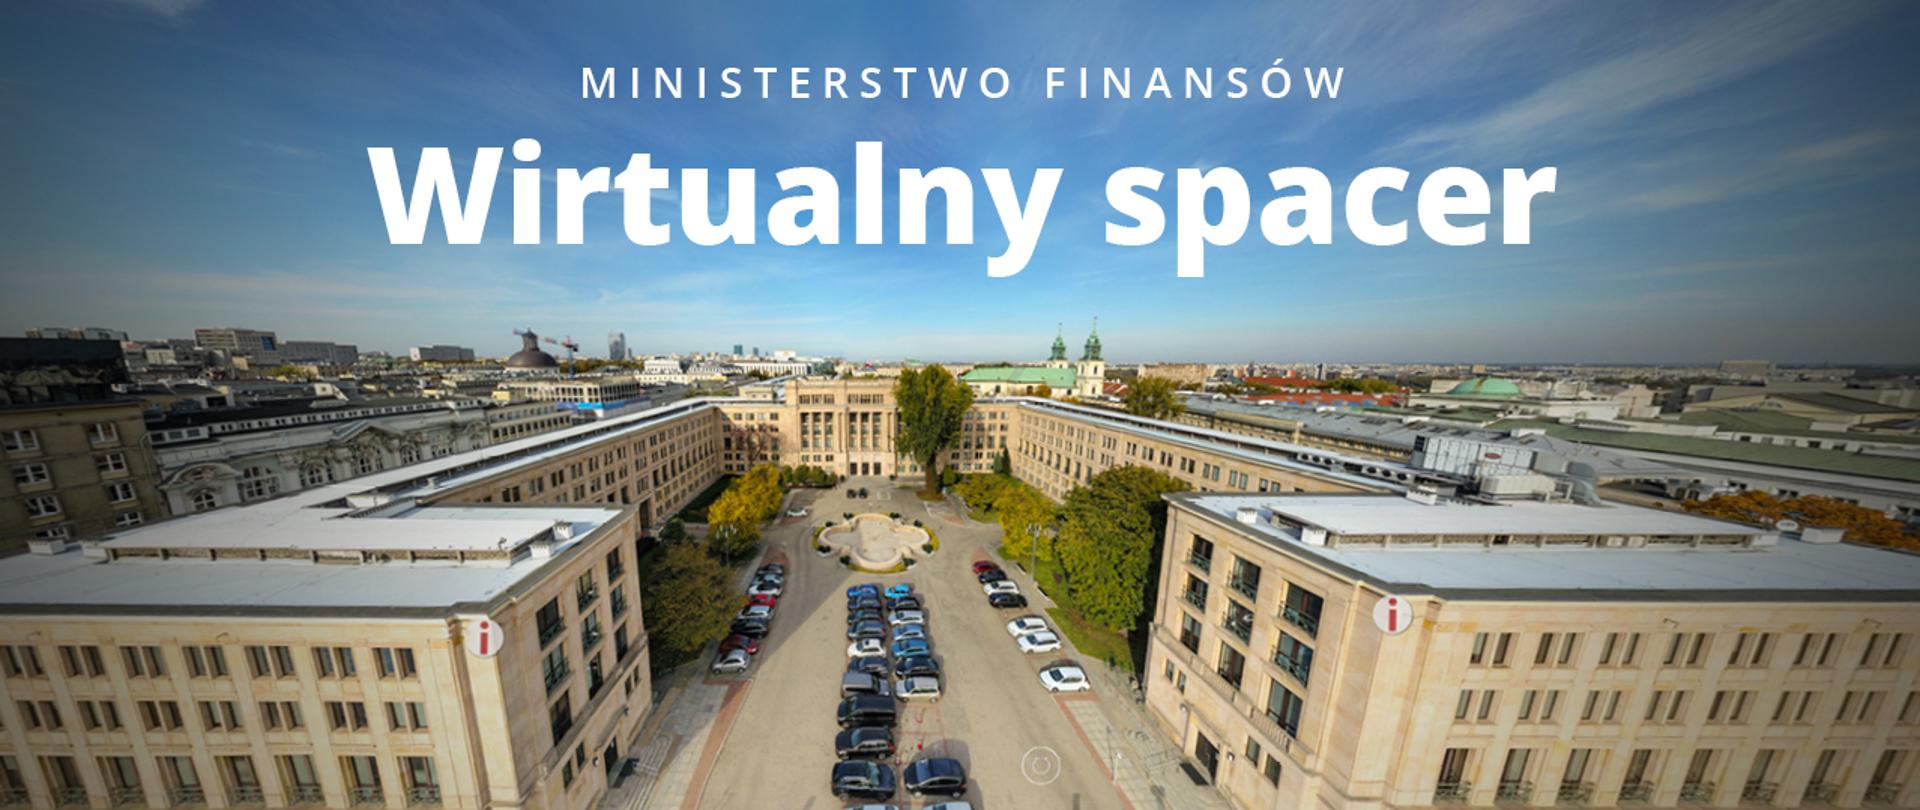 Gmach Ministerstwa Finansów a nad nim napis Ministerstwo Finansów Wirtualny spacer